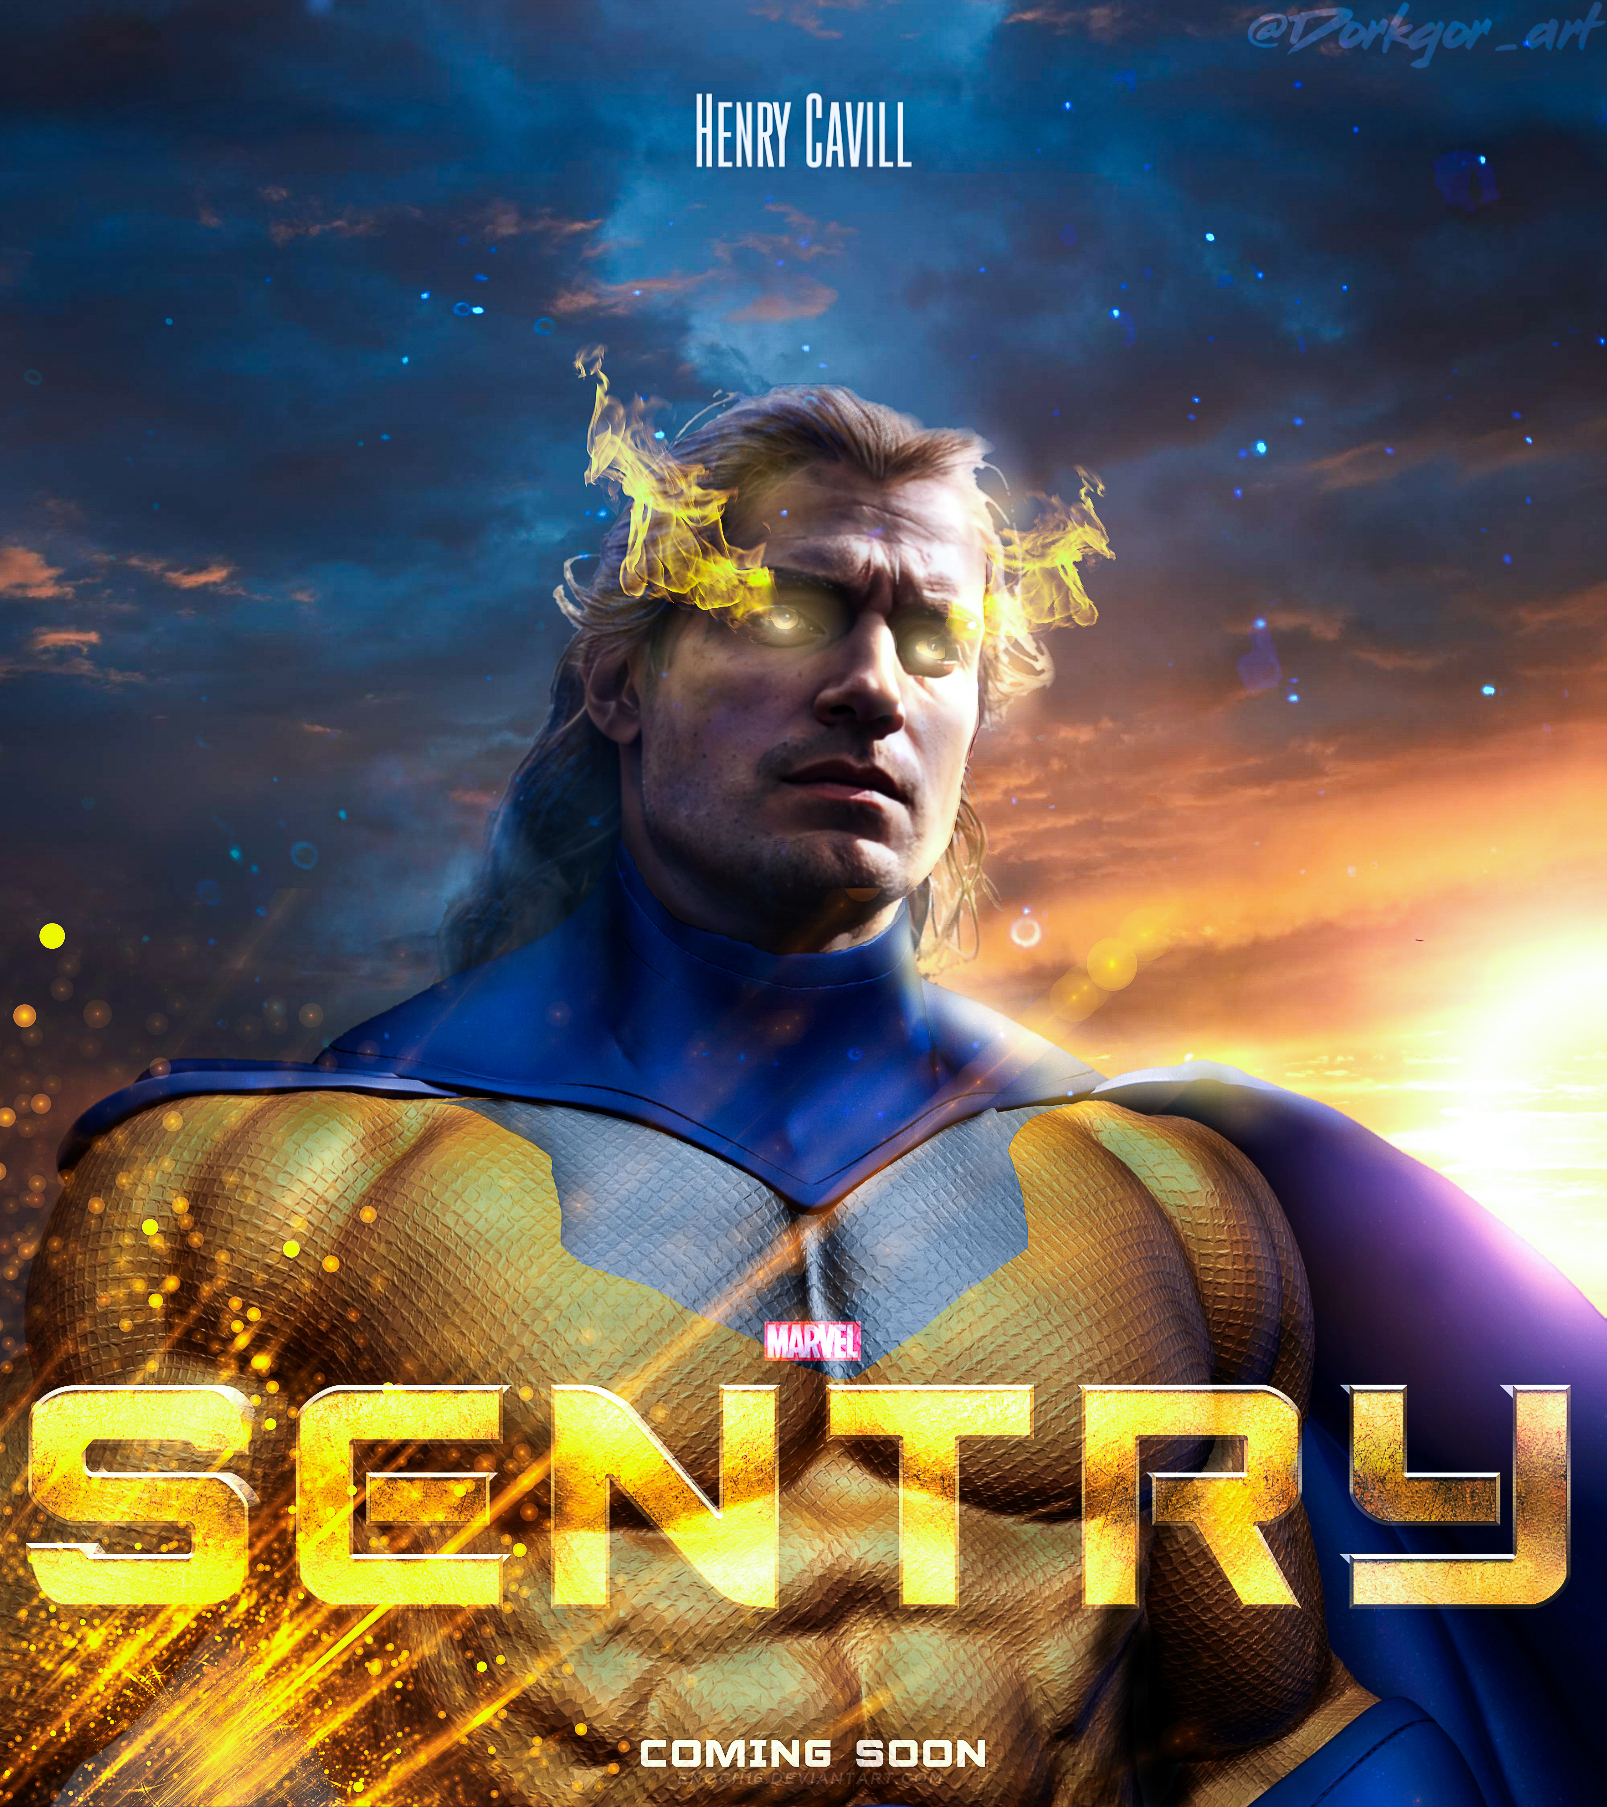 Sentry - Henry Cavill by juamote on DeviantArt